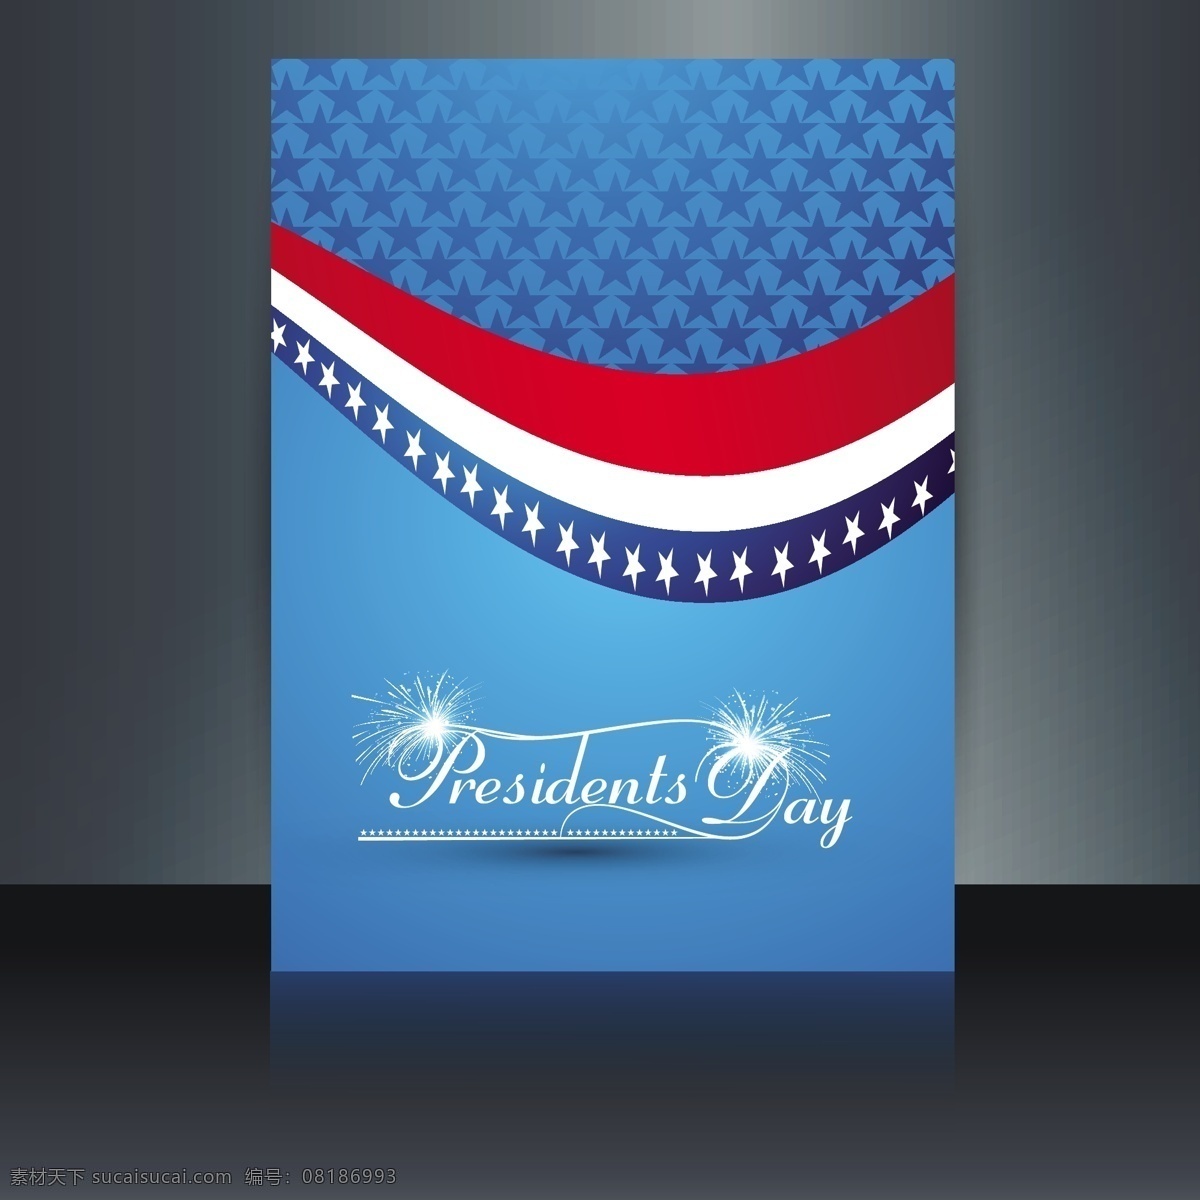 总统日卡 小册子 背景 抽象 卡片 旗帜 蓝色背景 蓝色 星星 美国 庆祝 星星背景 纪念日 美国国旗 爱国 总统 国家